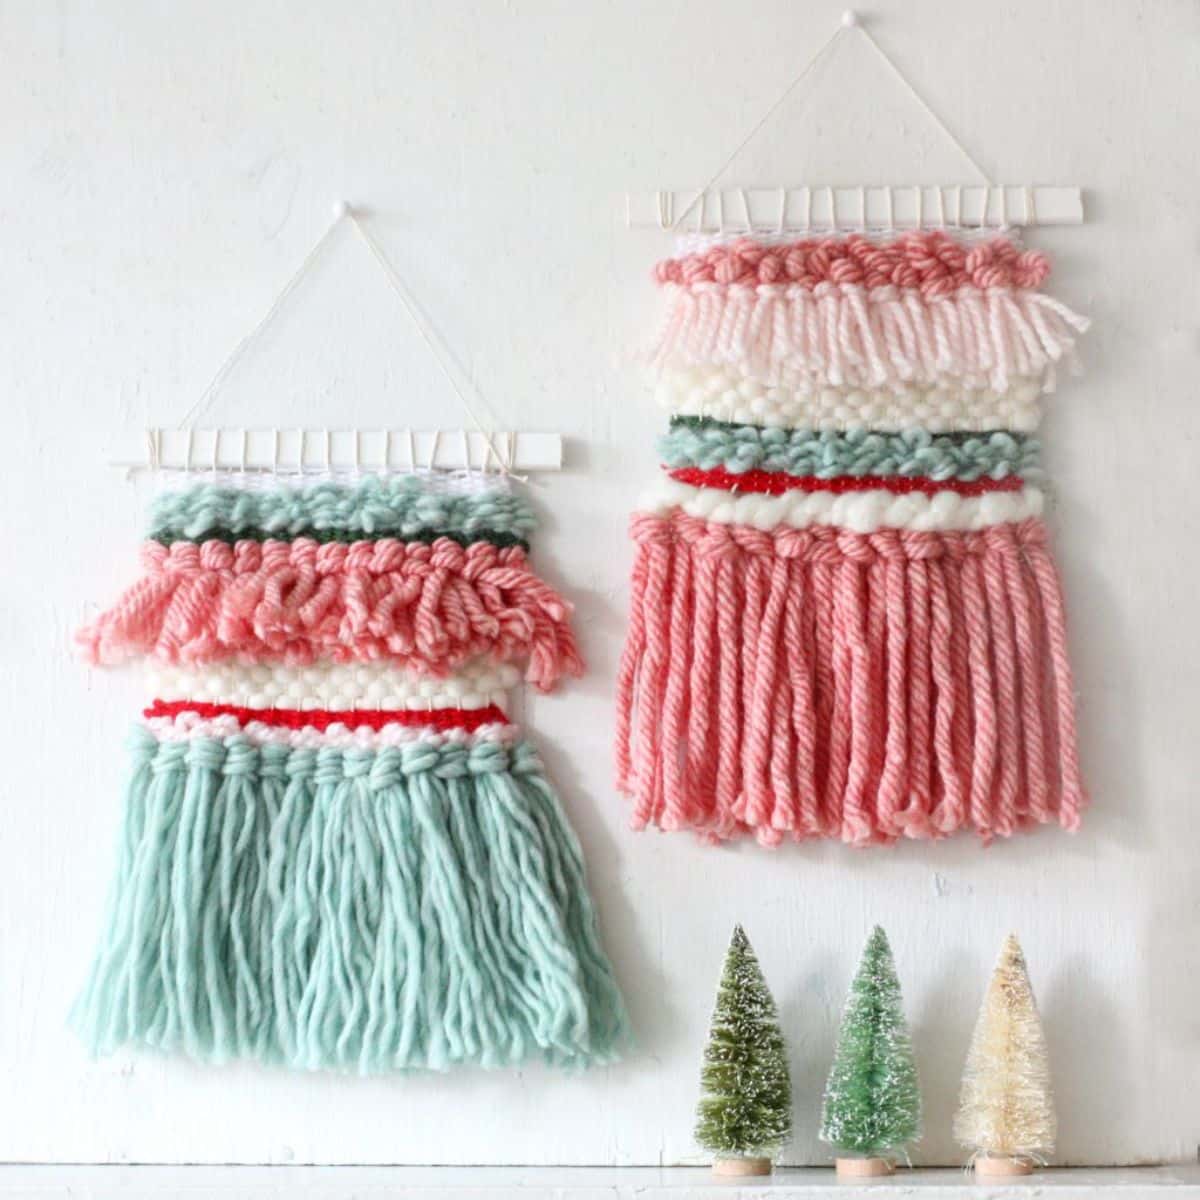 DIY Woven Holiday Wall Hanging